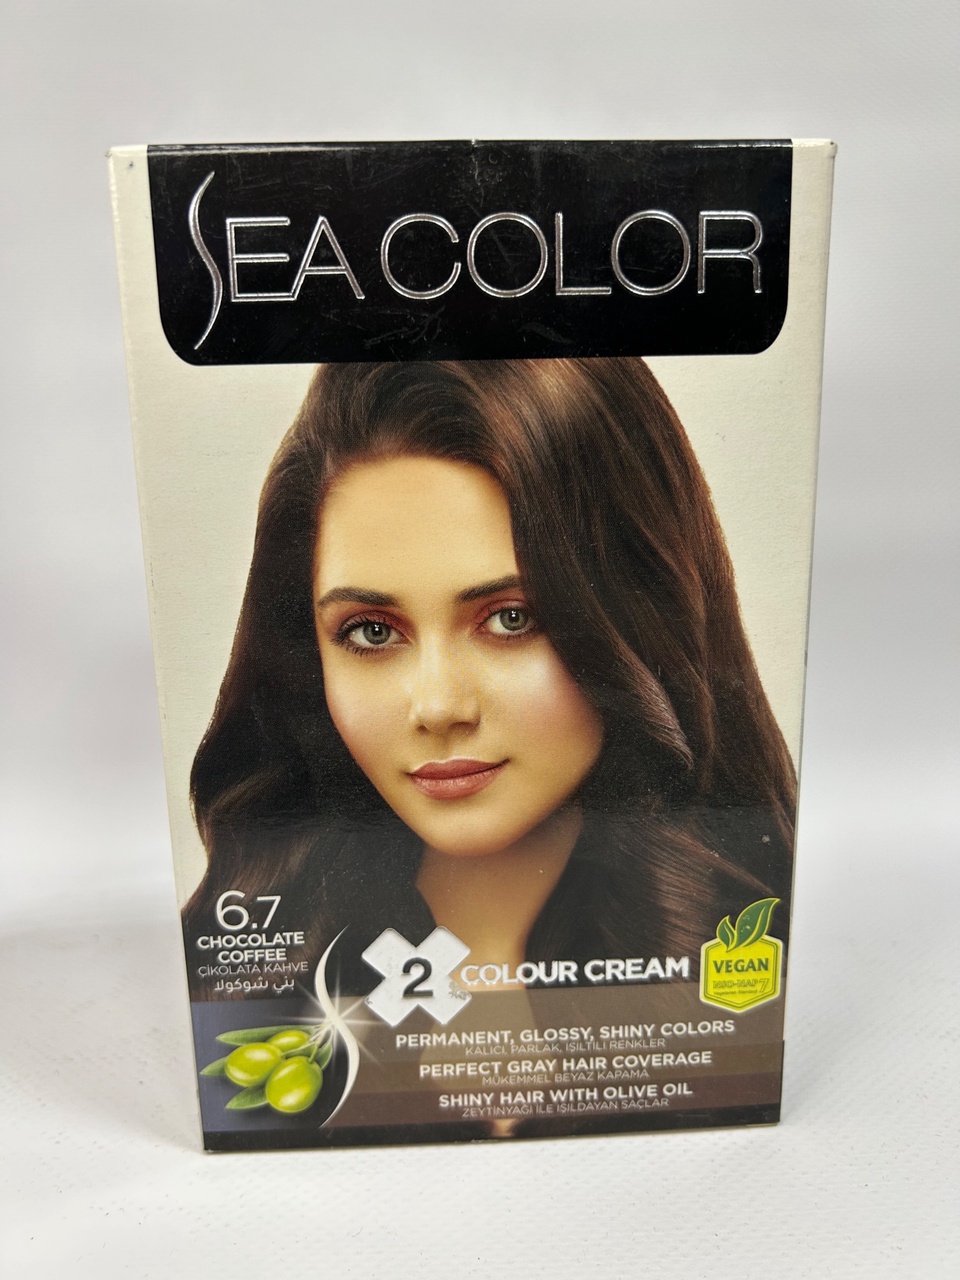 Sea Color 6.7 Краска д/волос «Шоколадный кофе» - 300 ₽, заказать онлайн.